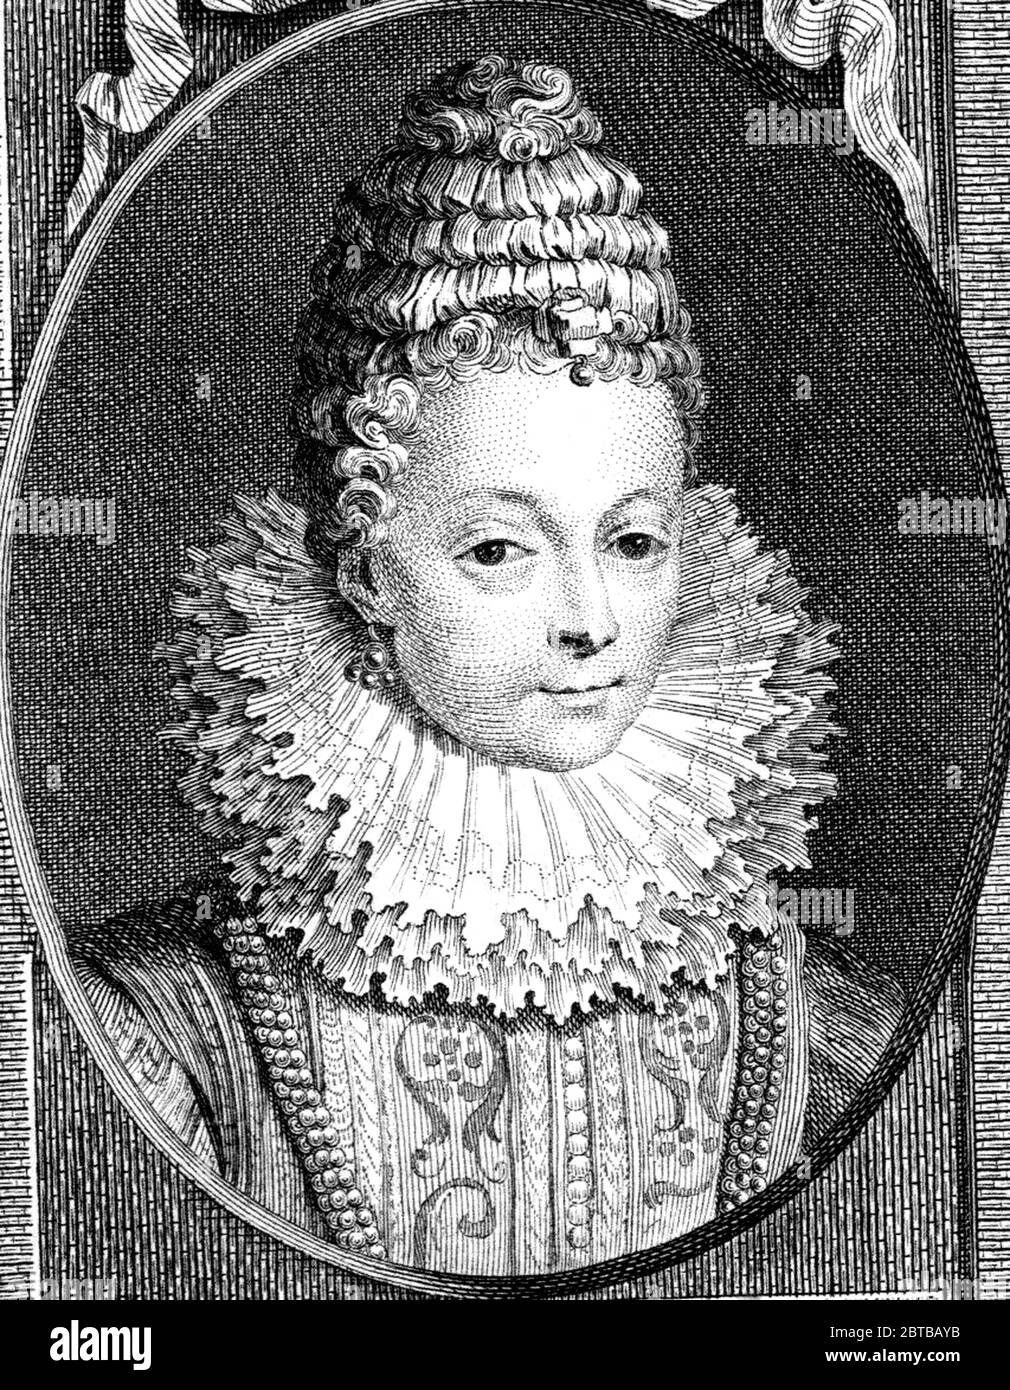 1600 c., FRANCE: French Queen MARIA DE MEDICI ( Marie ,  1575 - 1642 ), wife of King Henri IV de Bourbon mother of King Louis XIII ( 1601 - 1643 ). Portrait engraved by unknown artis . - de' Medici - Médicis - NOBILITY - NOBILI francesi - Nobiltà francese - FRANCIA - illustrazione - illustration - engraving - incisione - Regina di Francia - collar - colletto  - curls - riccioli - pizzo - lace - pearls necklace - collana di perle - perla - eardrops - orecchini - gorgiera --- ARCHIVIO GBB Stock Photo